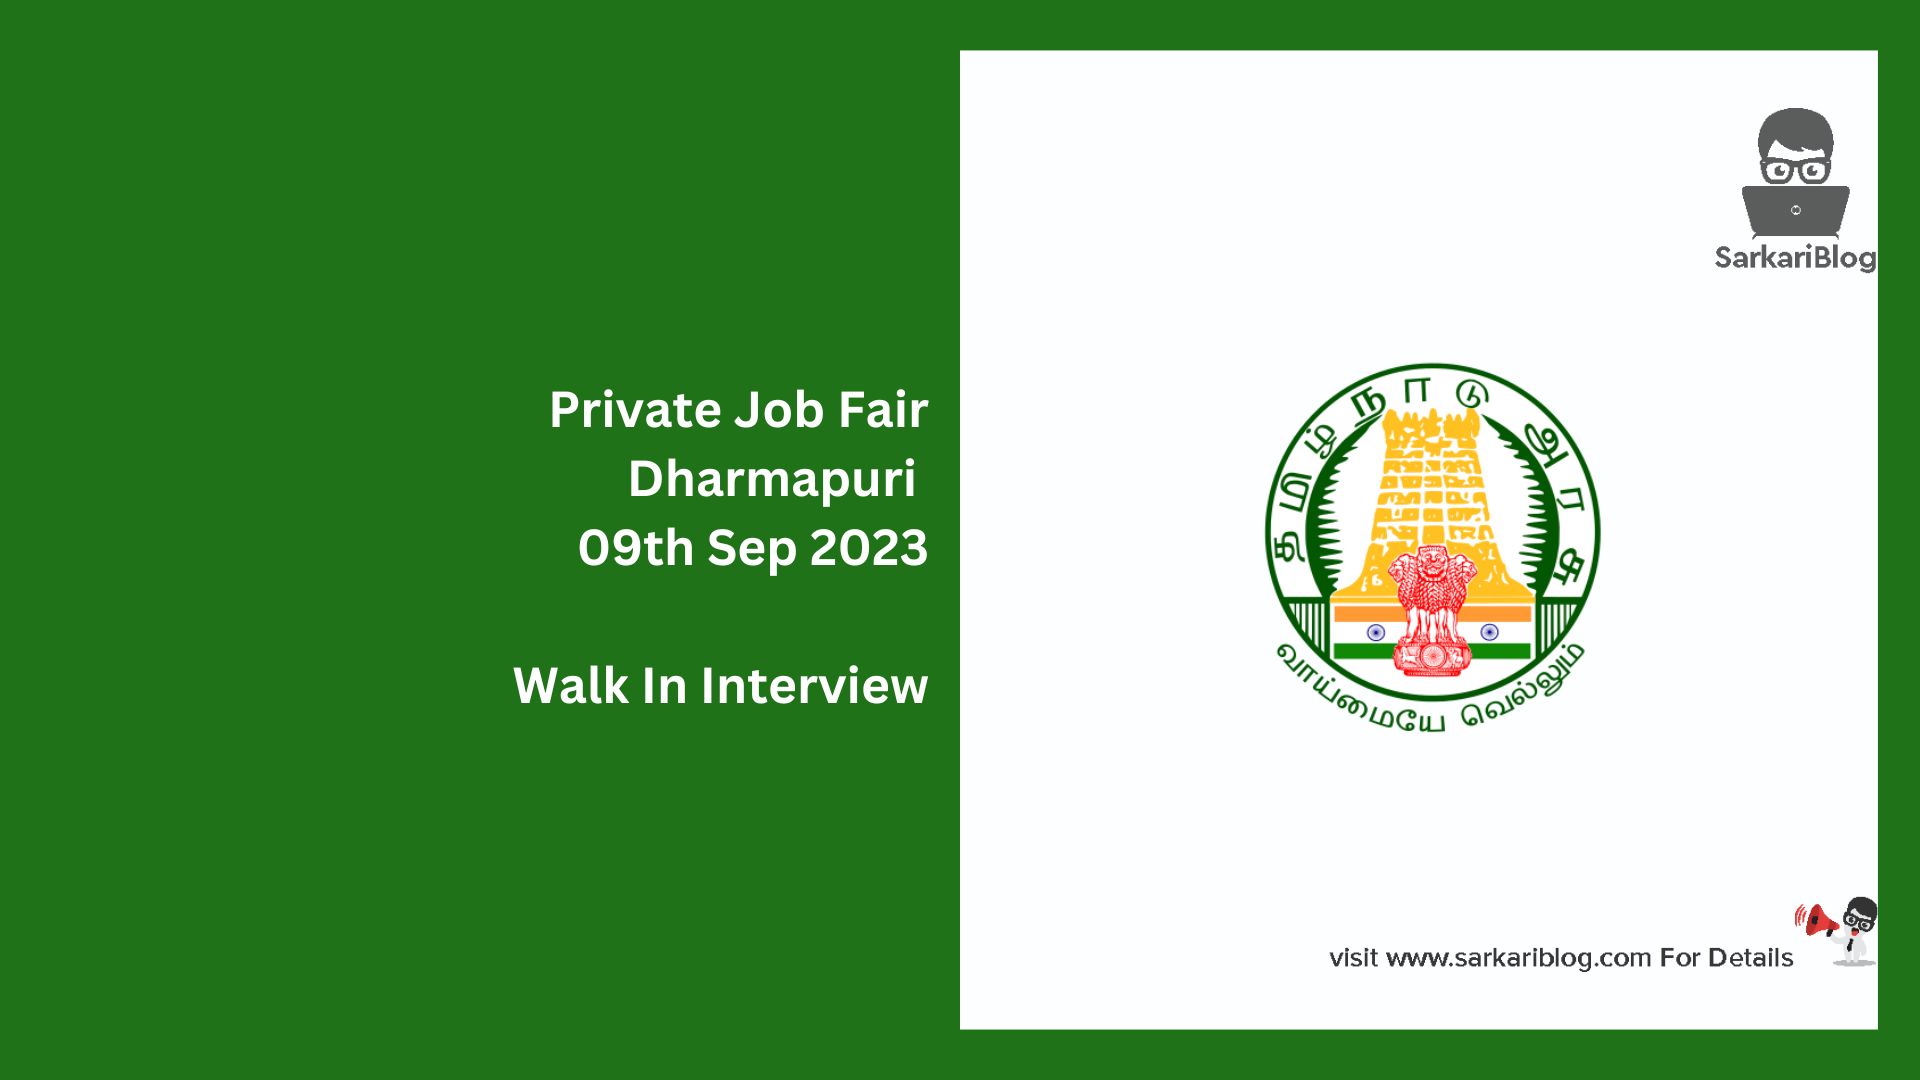 Private Job Fair Dharmapuri 09th Sep 2023